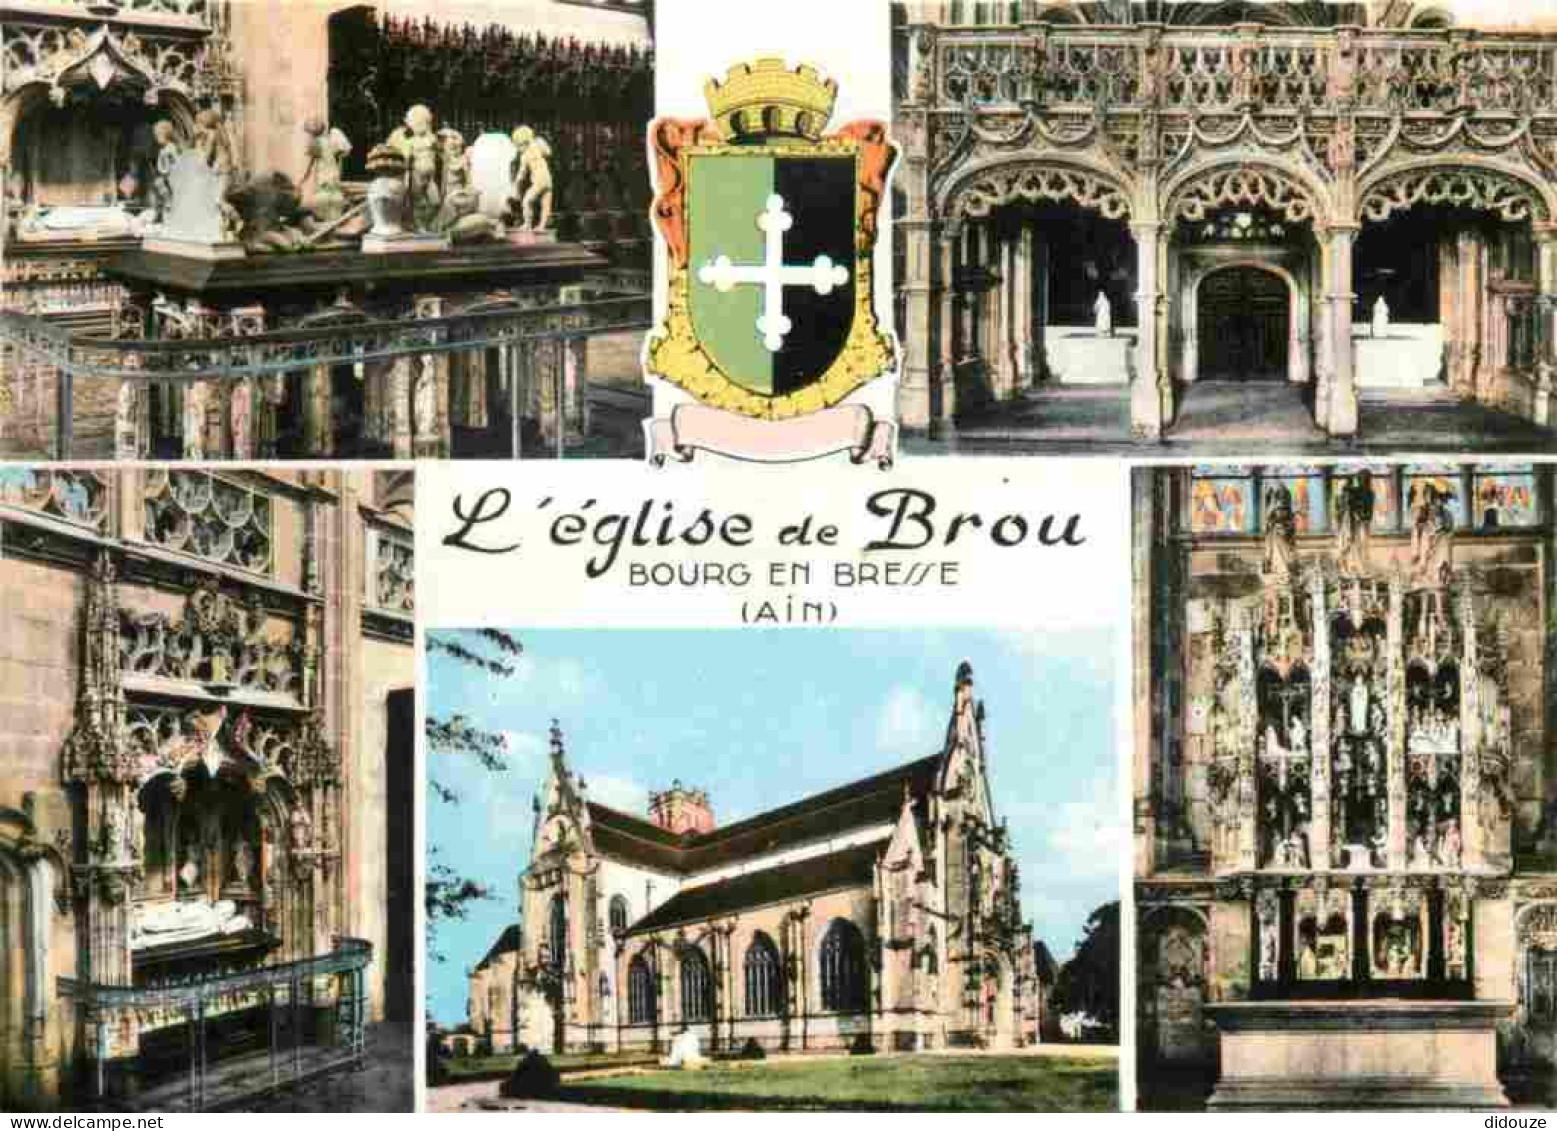 01 - Bourg En Bresse - Eglise De Brou - Intérieur De L'Eglise De Brou - Multivues - Mention Photographie Véritable - Car - Brou - Iglesia